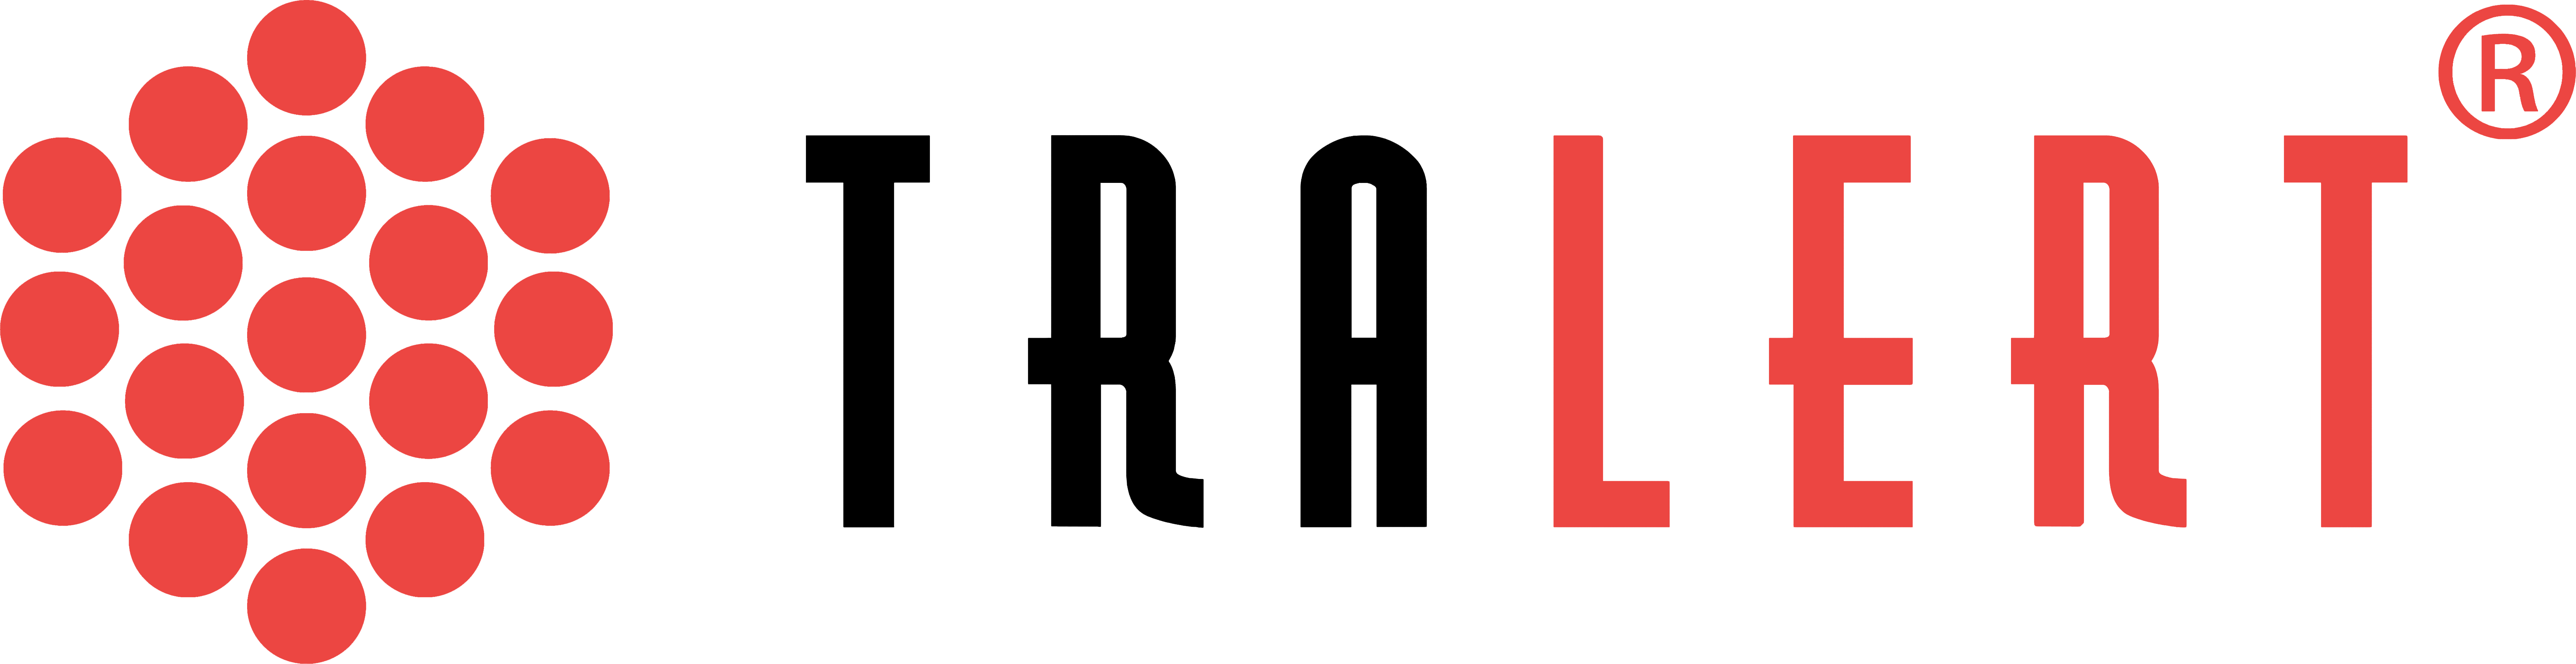 tralert logo rood-zwart